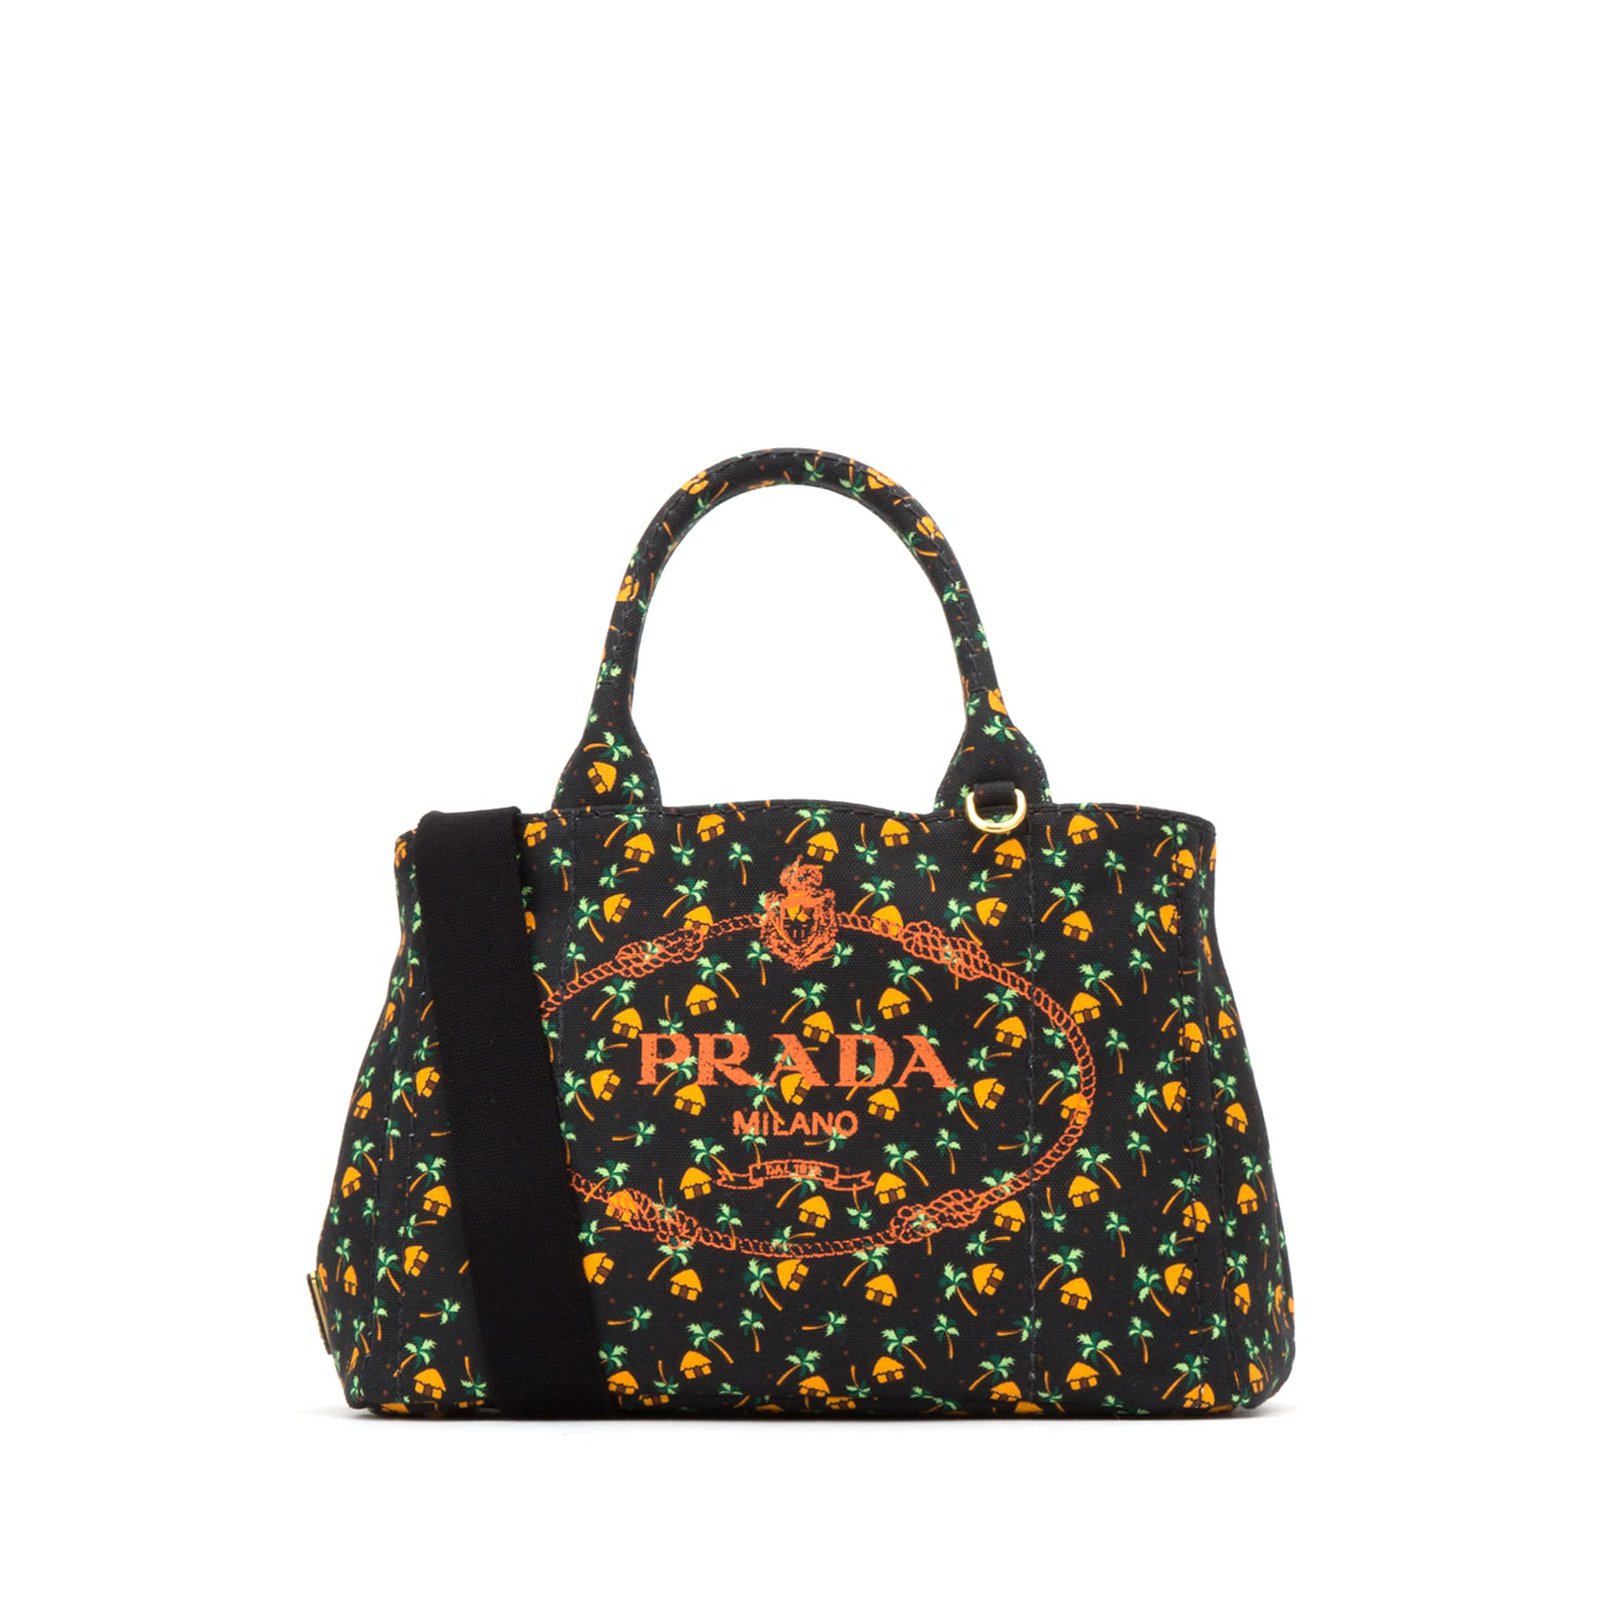 For Fall 2018, Prada's Bags Feel Youthful and Fun - PurseBlog